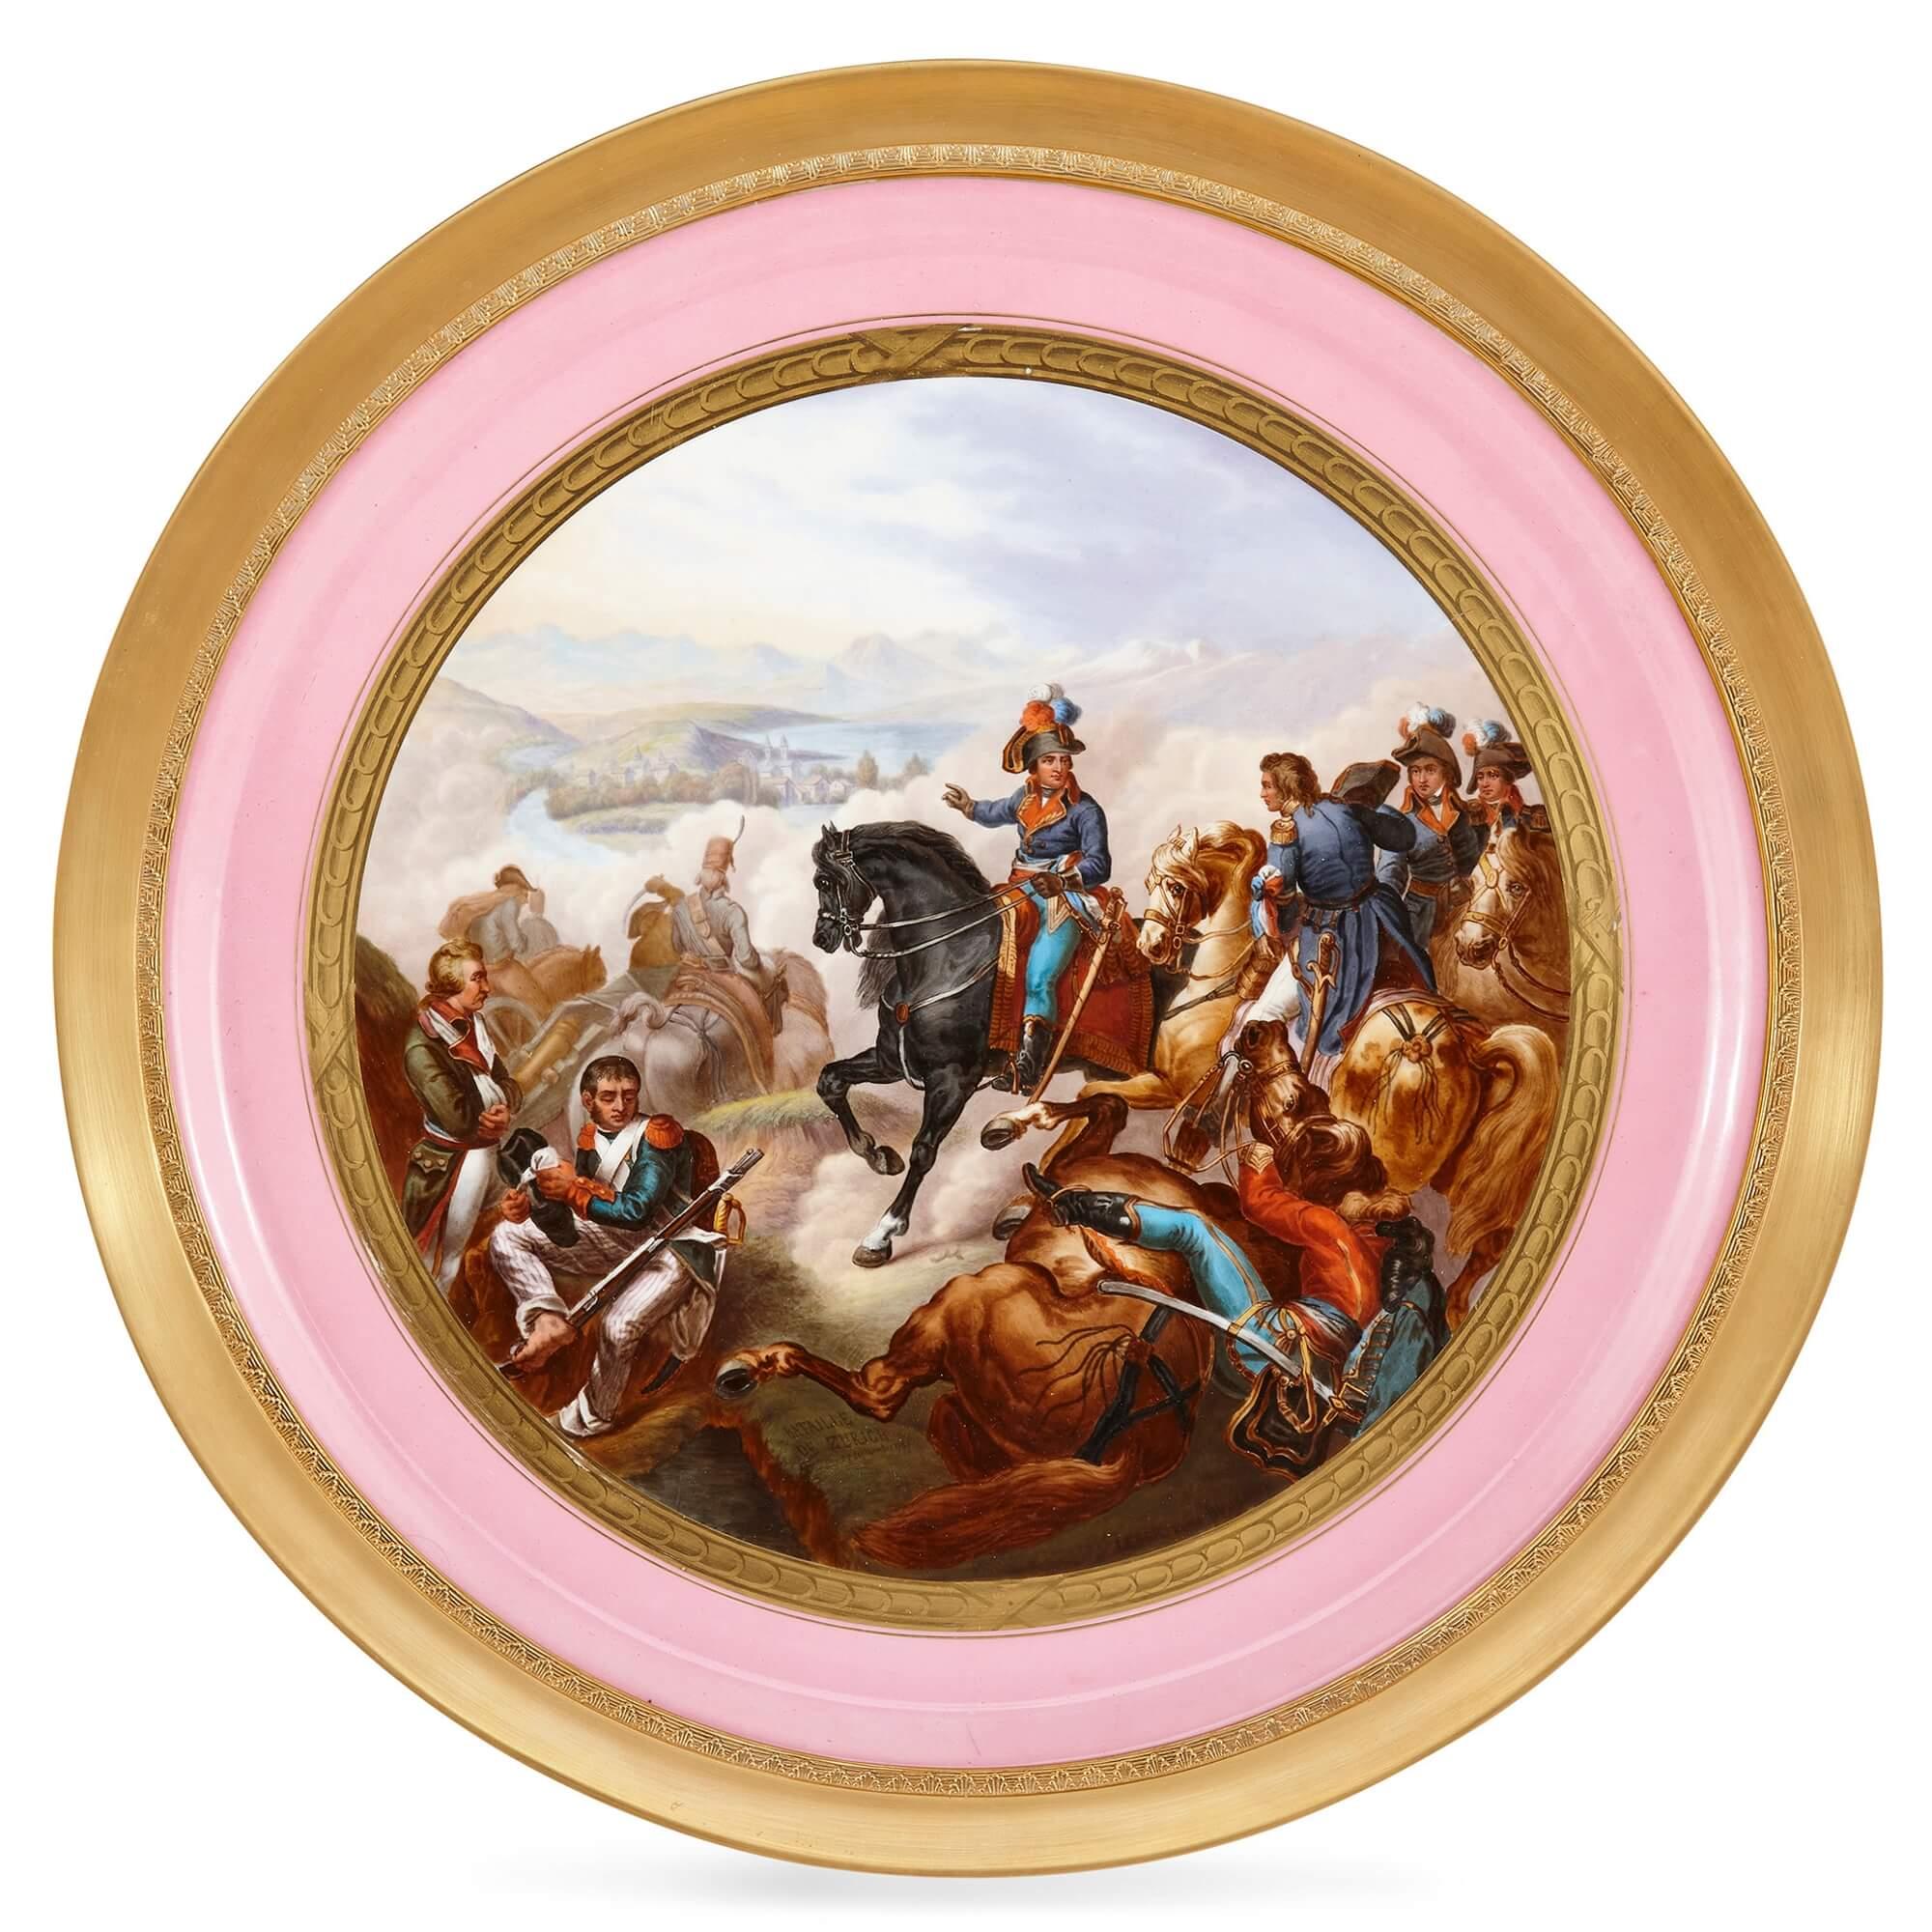 Une paire de grands plateaux en porcelaine peinte de style Sèvres et Napoléon.
Français, 19ème siècle
2cm de haut x 45cm de diamètre, cadres 51cm de diamètre

Excellemment peints et finement travaillés, ces chargeurs en porcelaine peinte de style